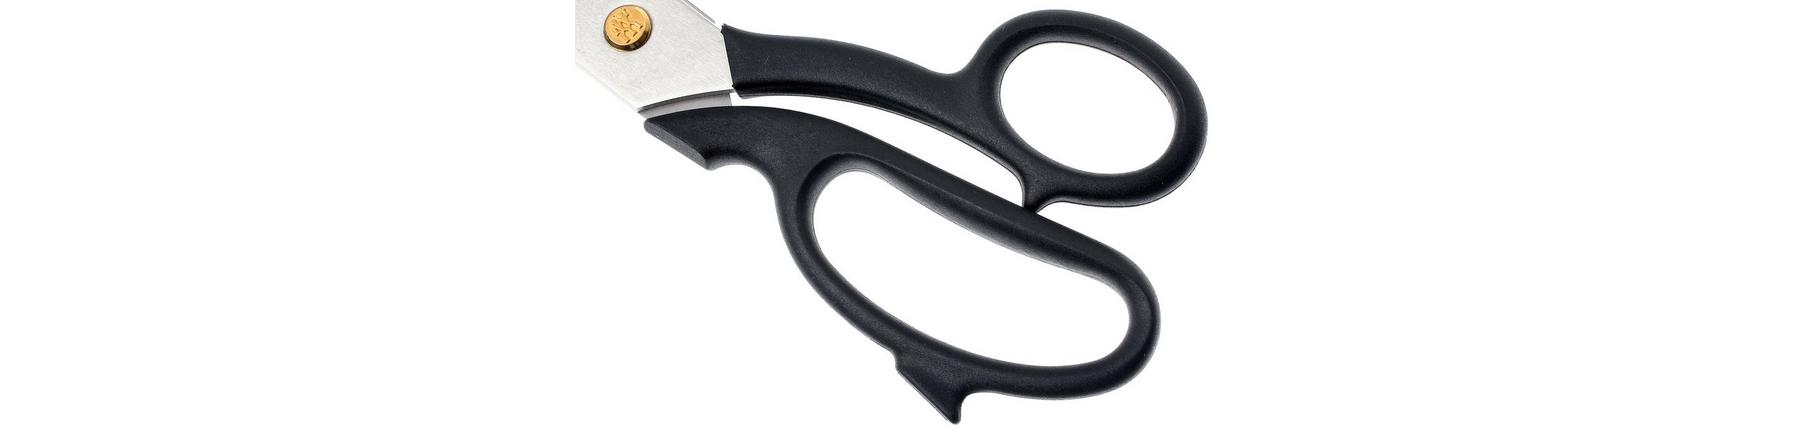 Zwilling J.A. Henckels Tailor's Scissors 26 cm (10)